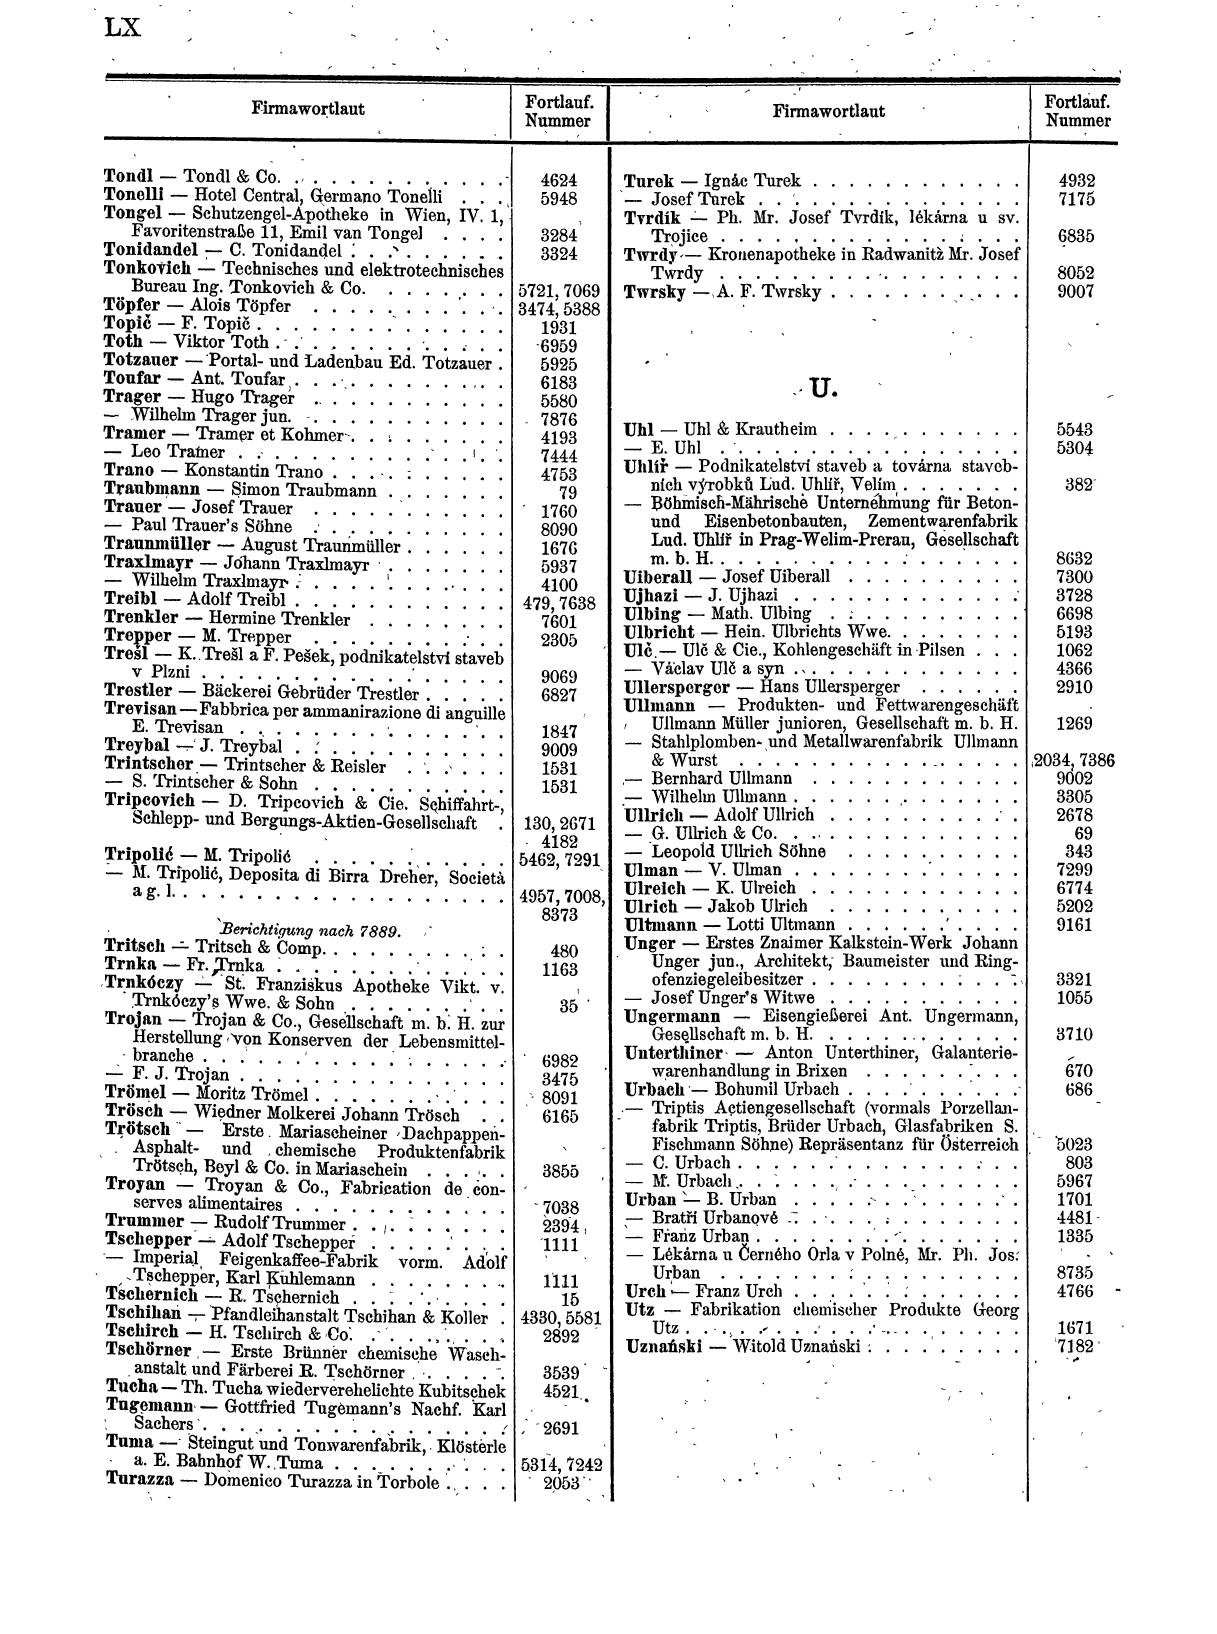 Zentralblatt für die Eintragungen in das Handelsregister 1913, Teil 1 - Seite 68